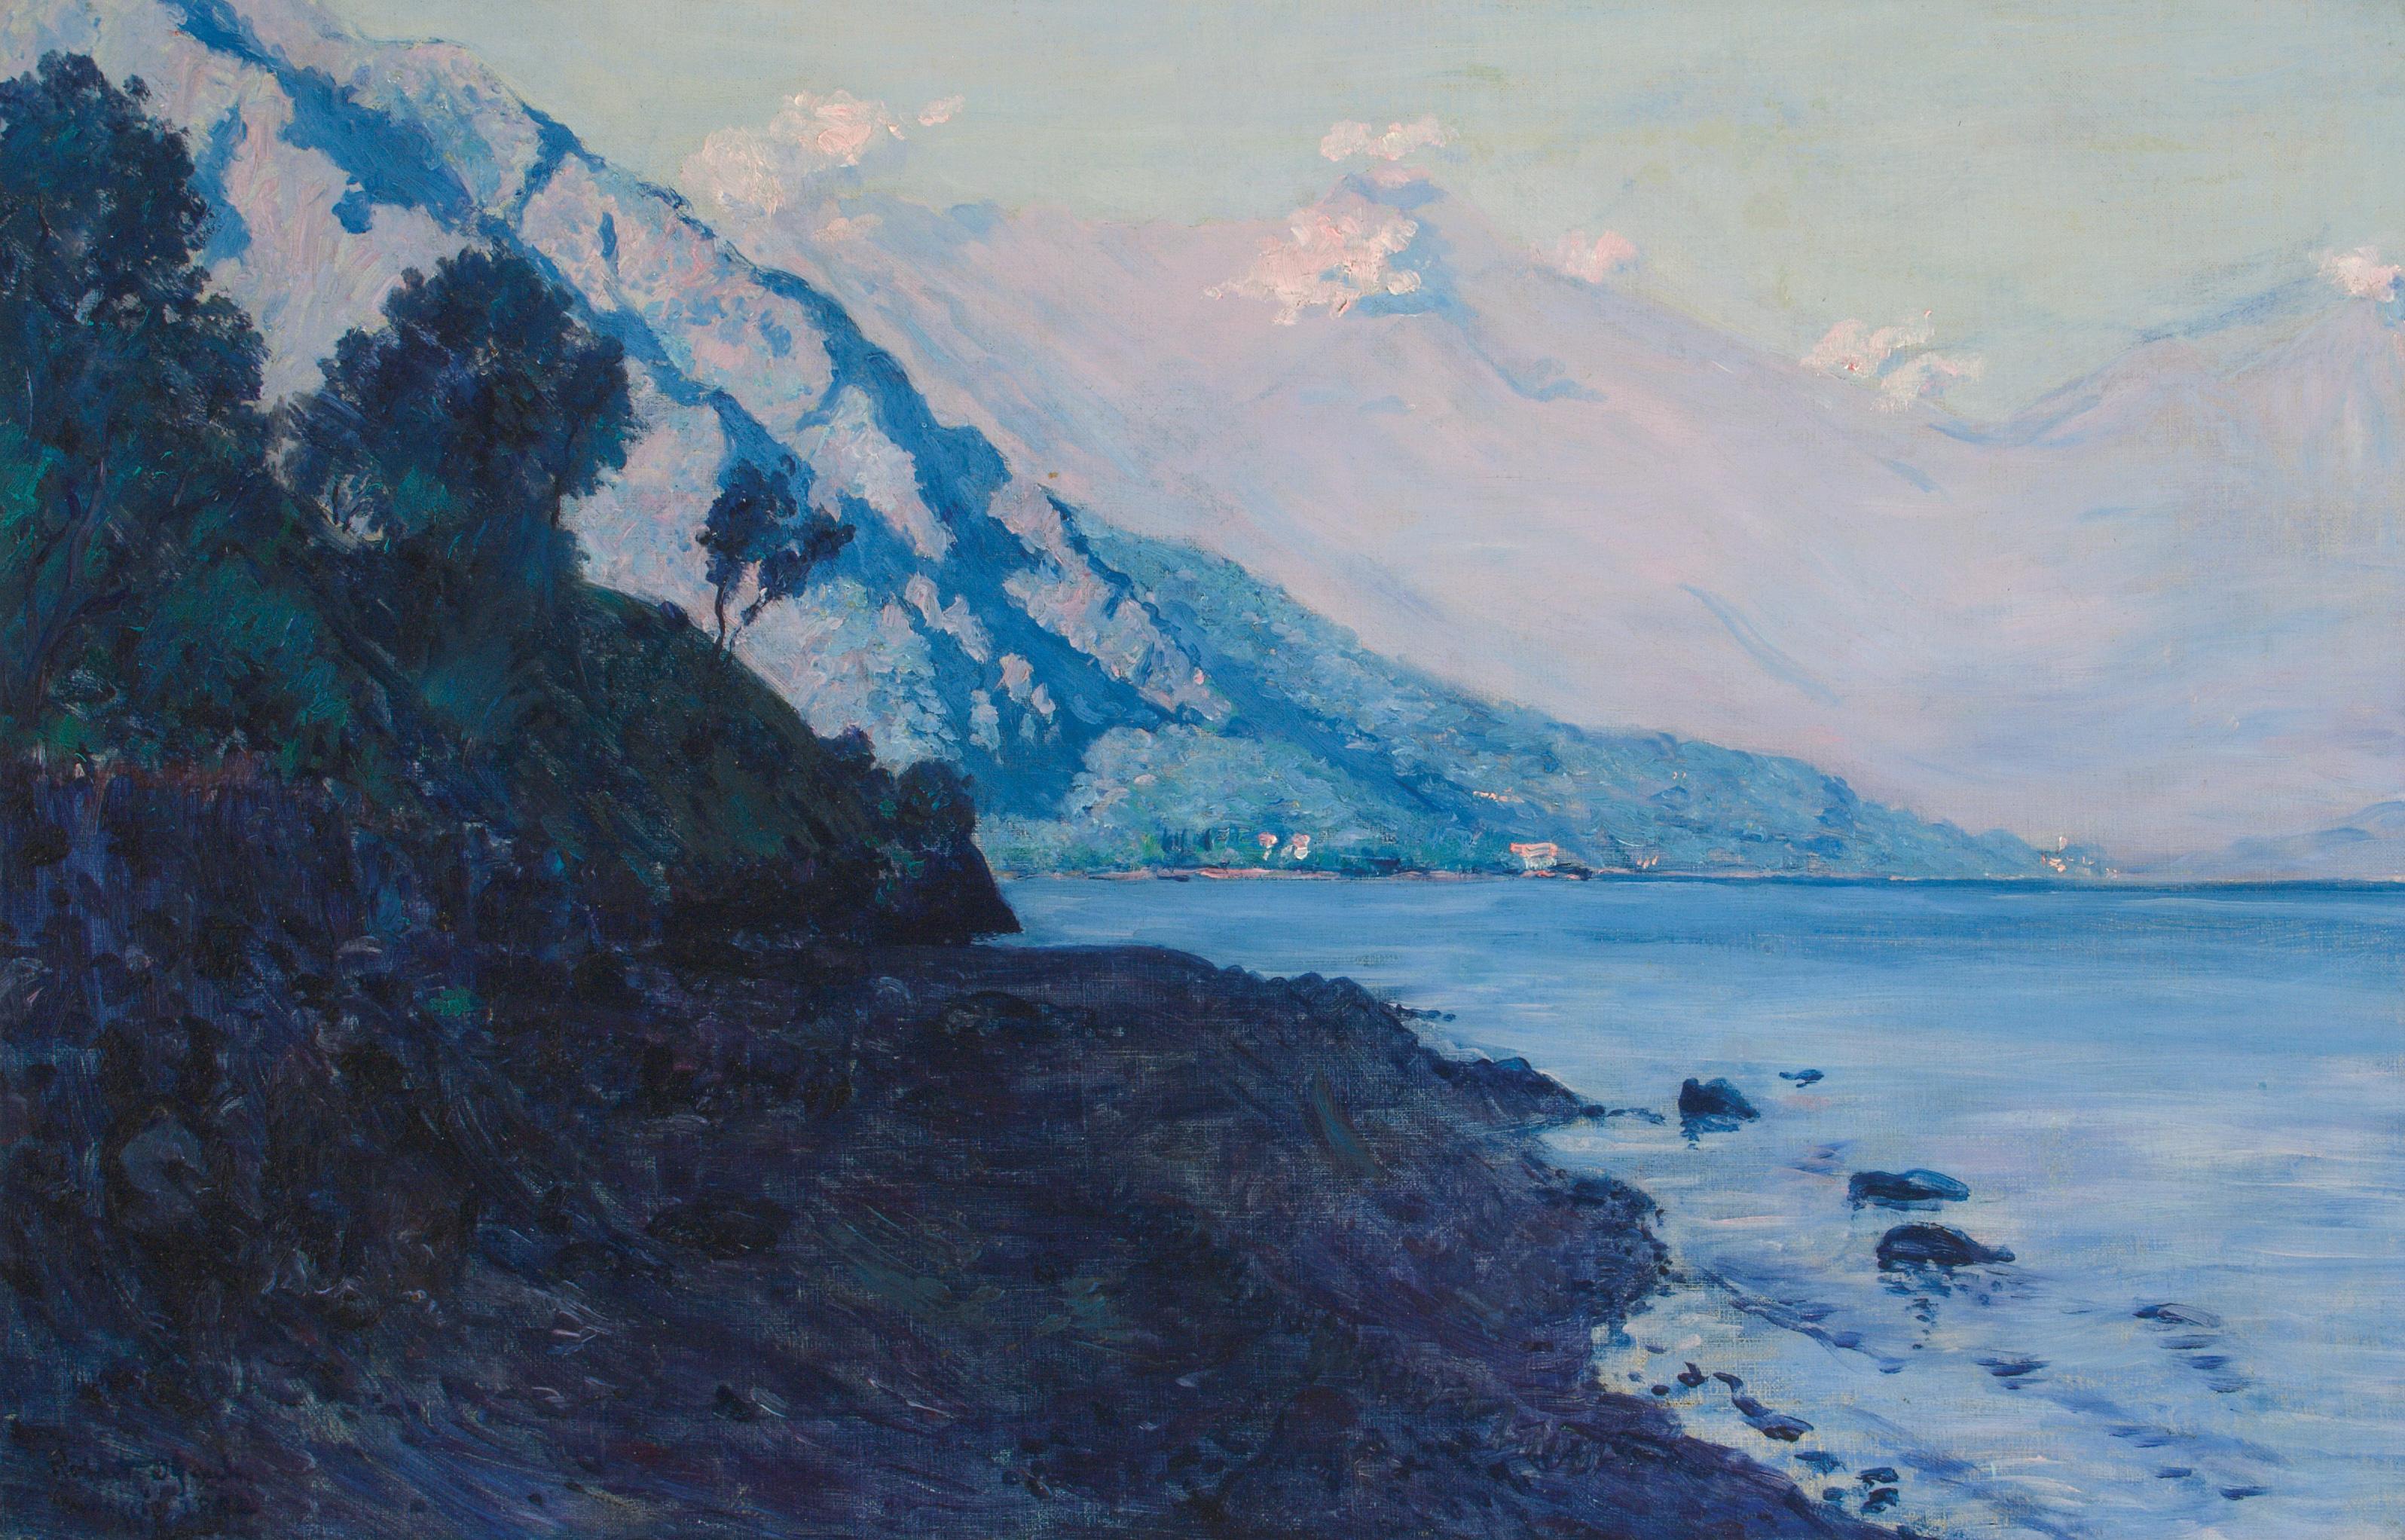 Como, Italien, in der Nähe von Menaggio – Ölgemälde des irischen Künstlers Gauley – Painting von Robert Gauley